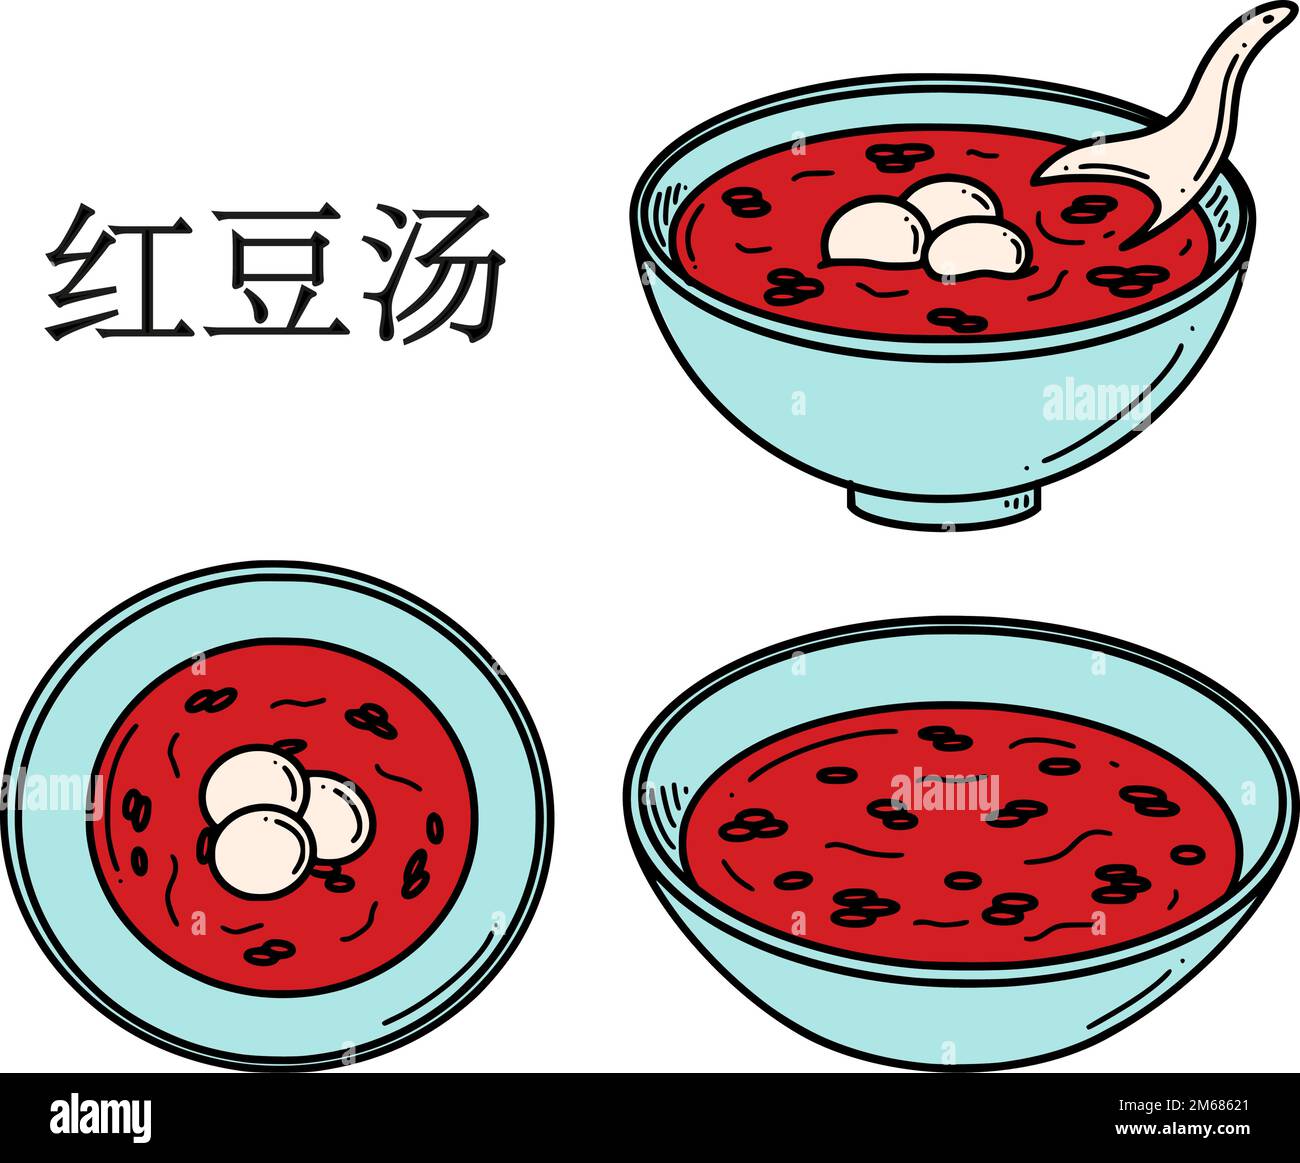 Hong dou Tang Traduction de la soupe chinoise de haricots rouges doux. Illustration vectorielle de dessert du nouvel an chinois dans un style Doodle. Illustration de Vecteur